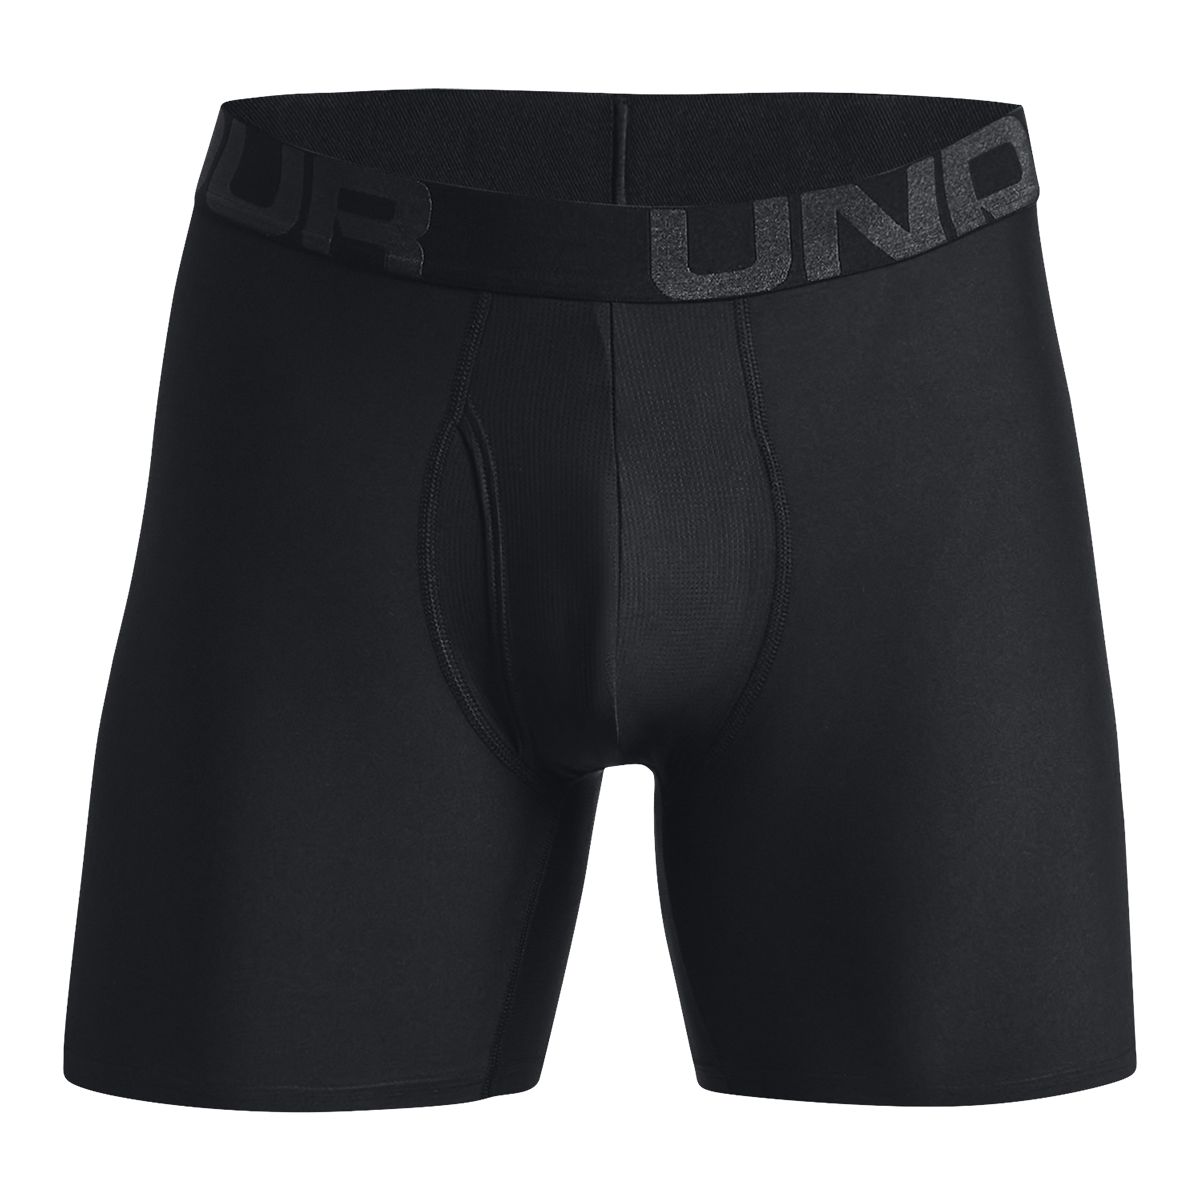 Nike Dri-FIT Reluxe Men's Trunk, Underwear, Moisture-Wicking